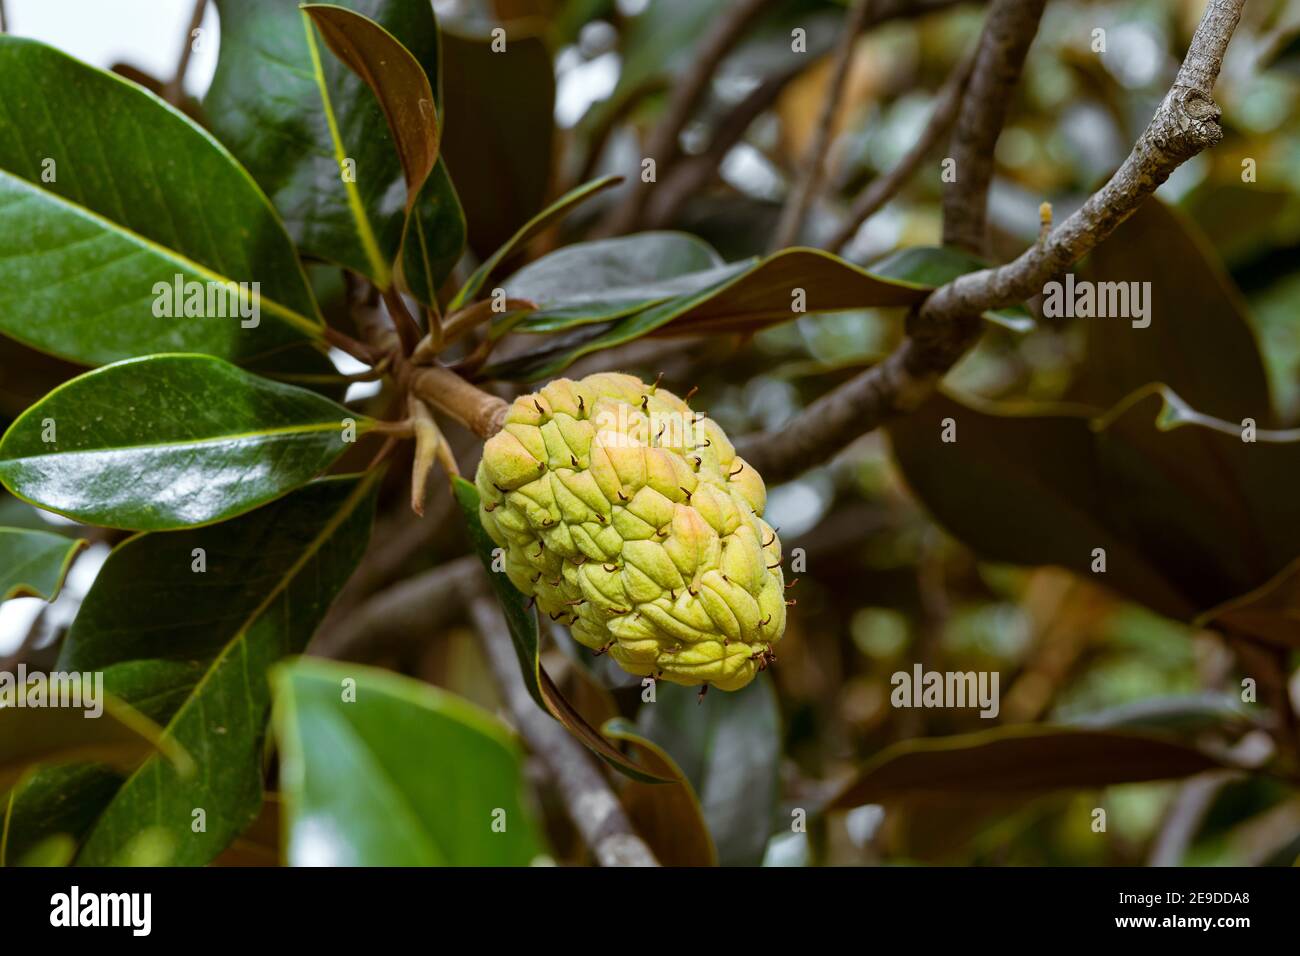 gros plan du fruit jaune du magnolia dans un jardin Banque D'Images